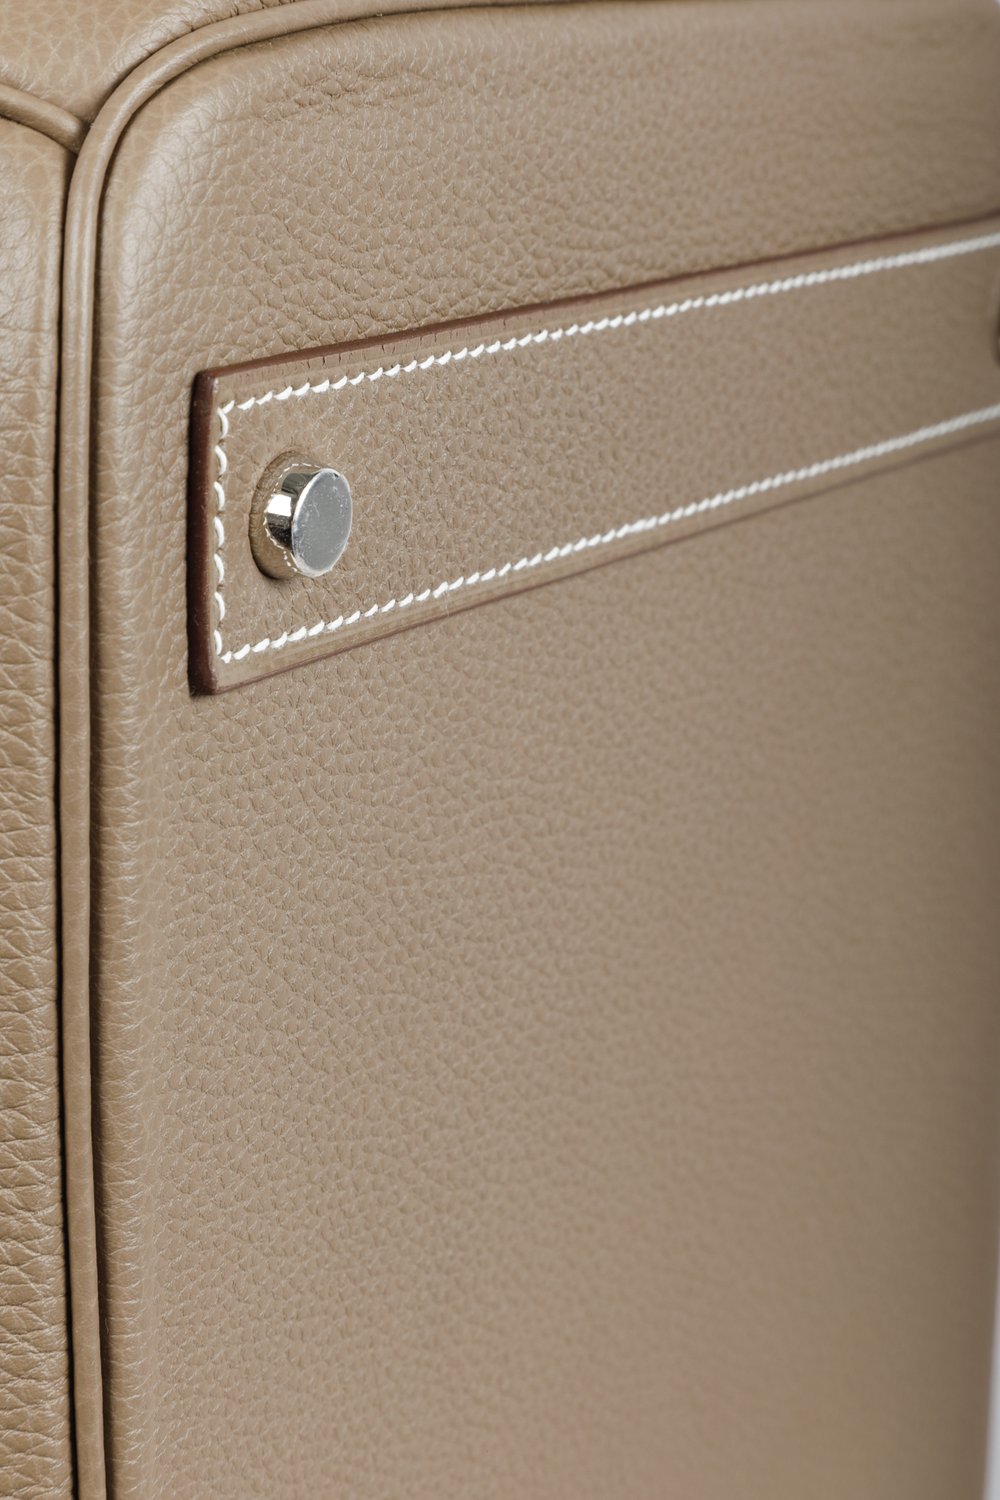 Hermès Etoupe Togo Birkin 40 Palladium Hardware, 2012 Available